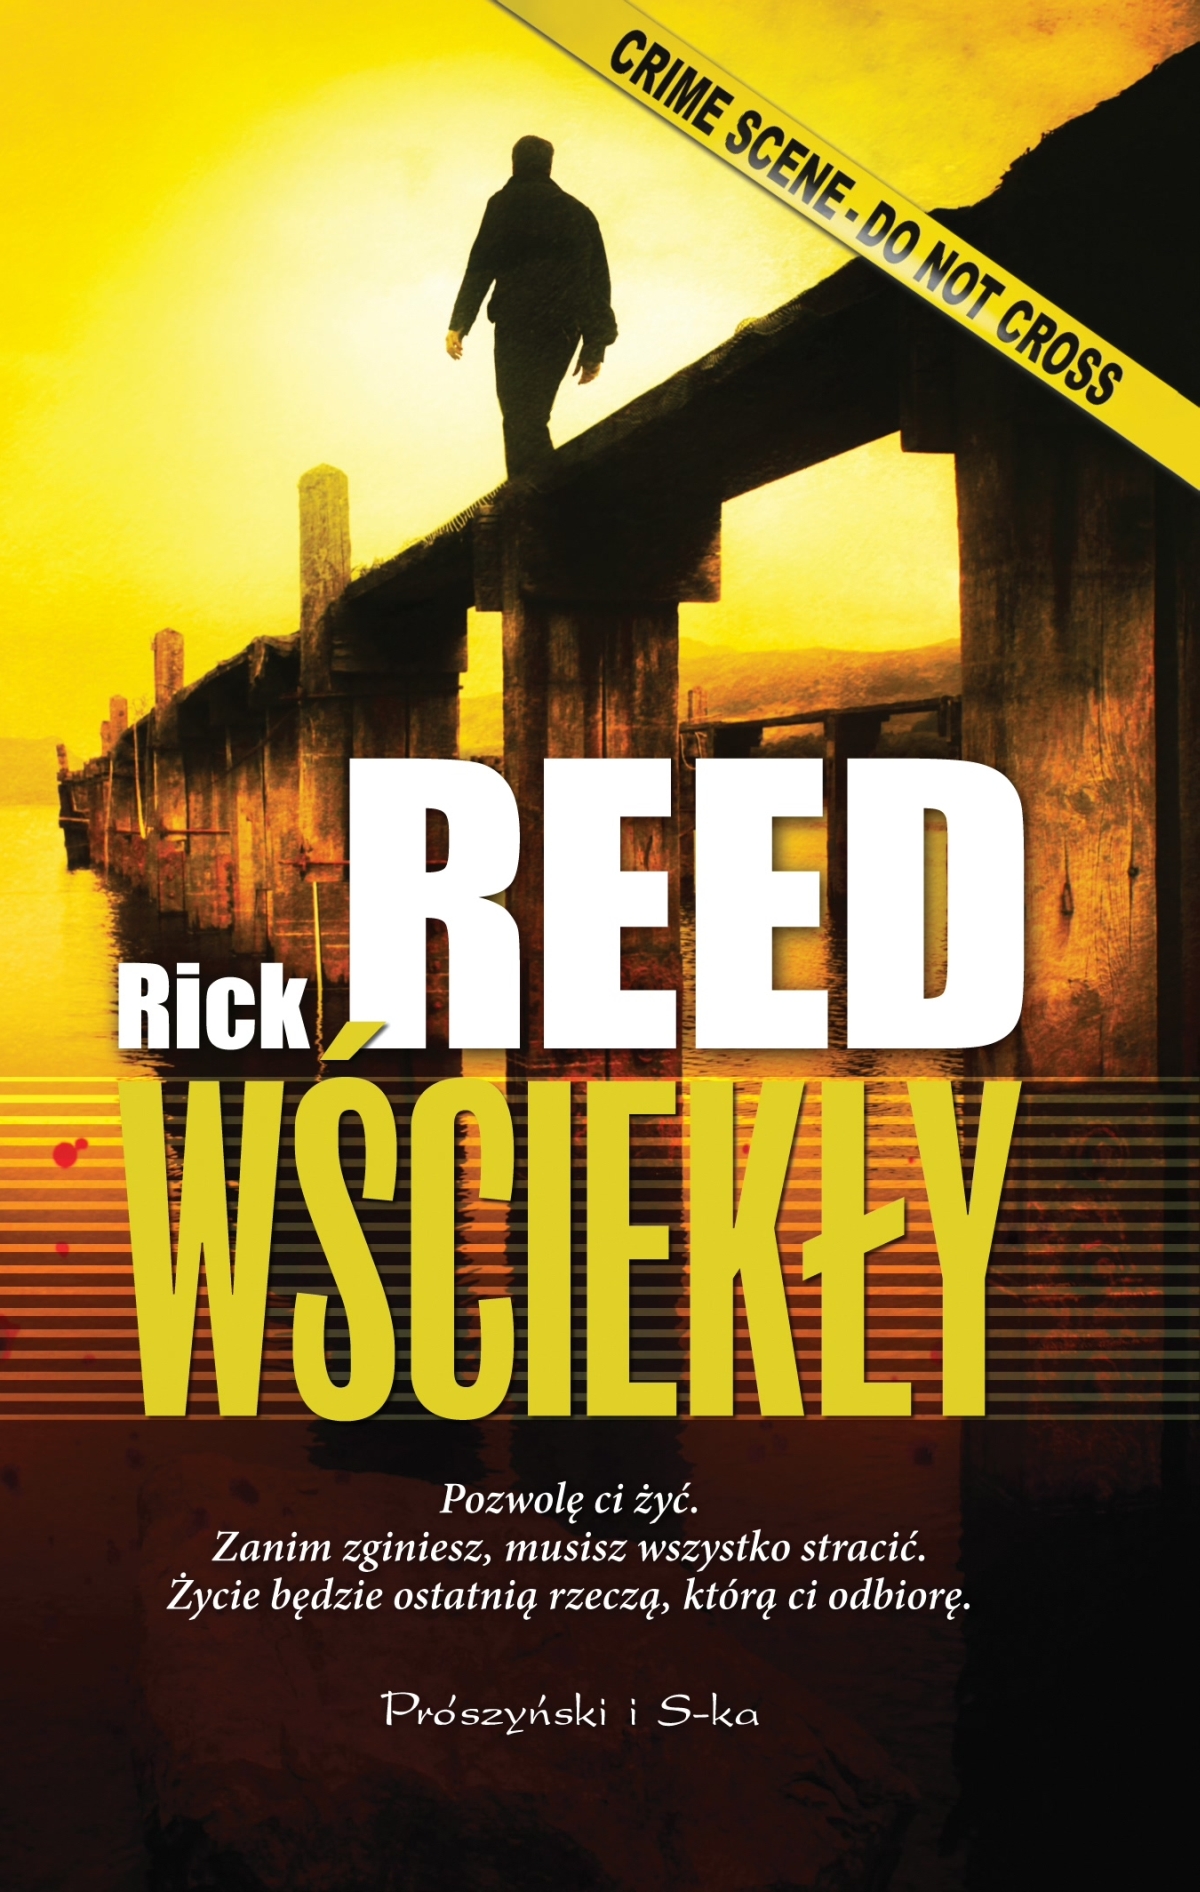 Rick Reed "Wściekły" - premiera książki i konkurs dla Czytelników Banzaj.pl